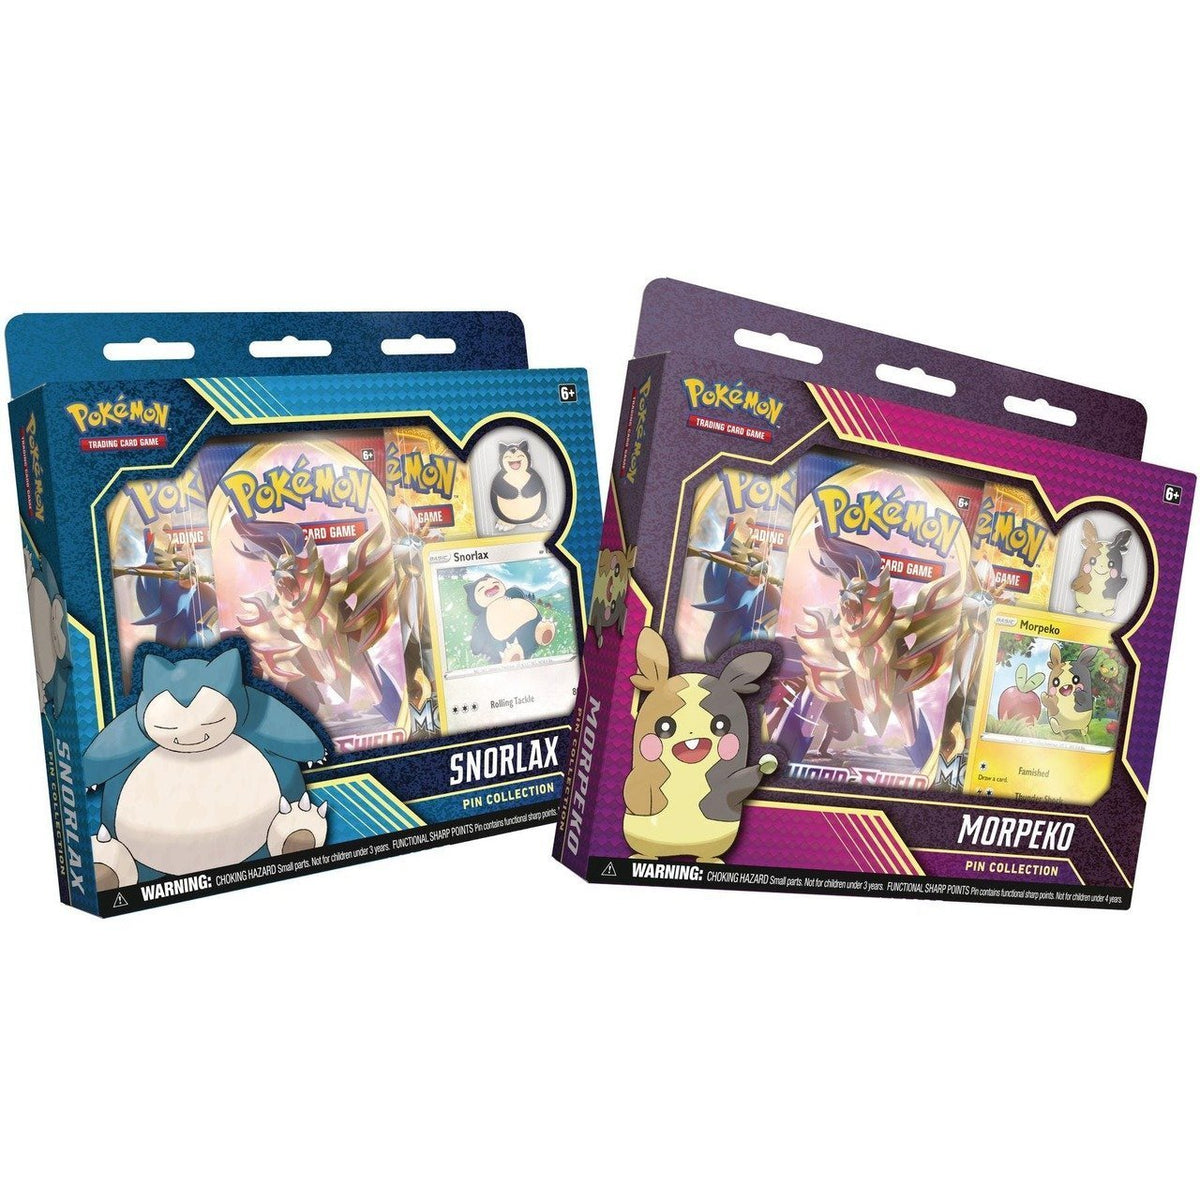 Pokémon TCG: Snorlax/Morpeko Pin Collection-Morpeko Pin Collection-The Pokémon Company International-Ace Cards &amp; Collectibles